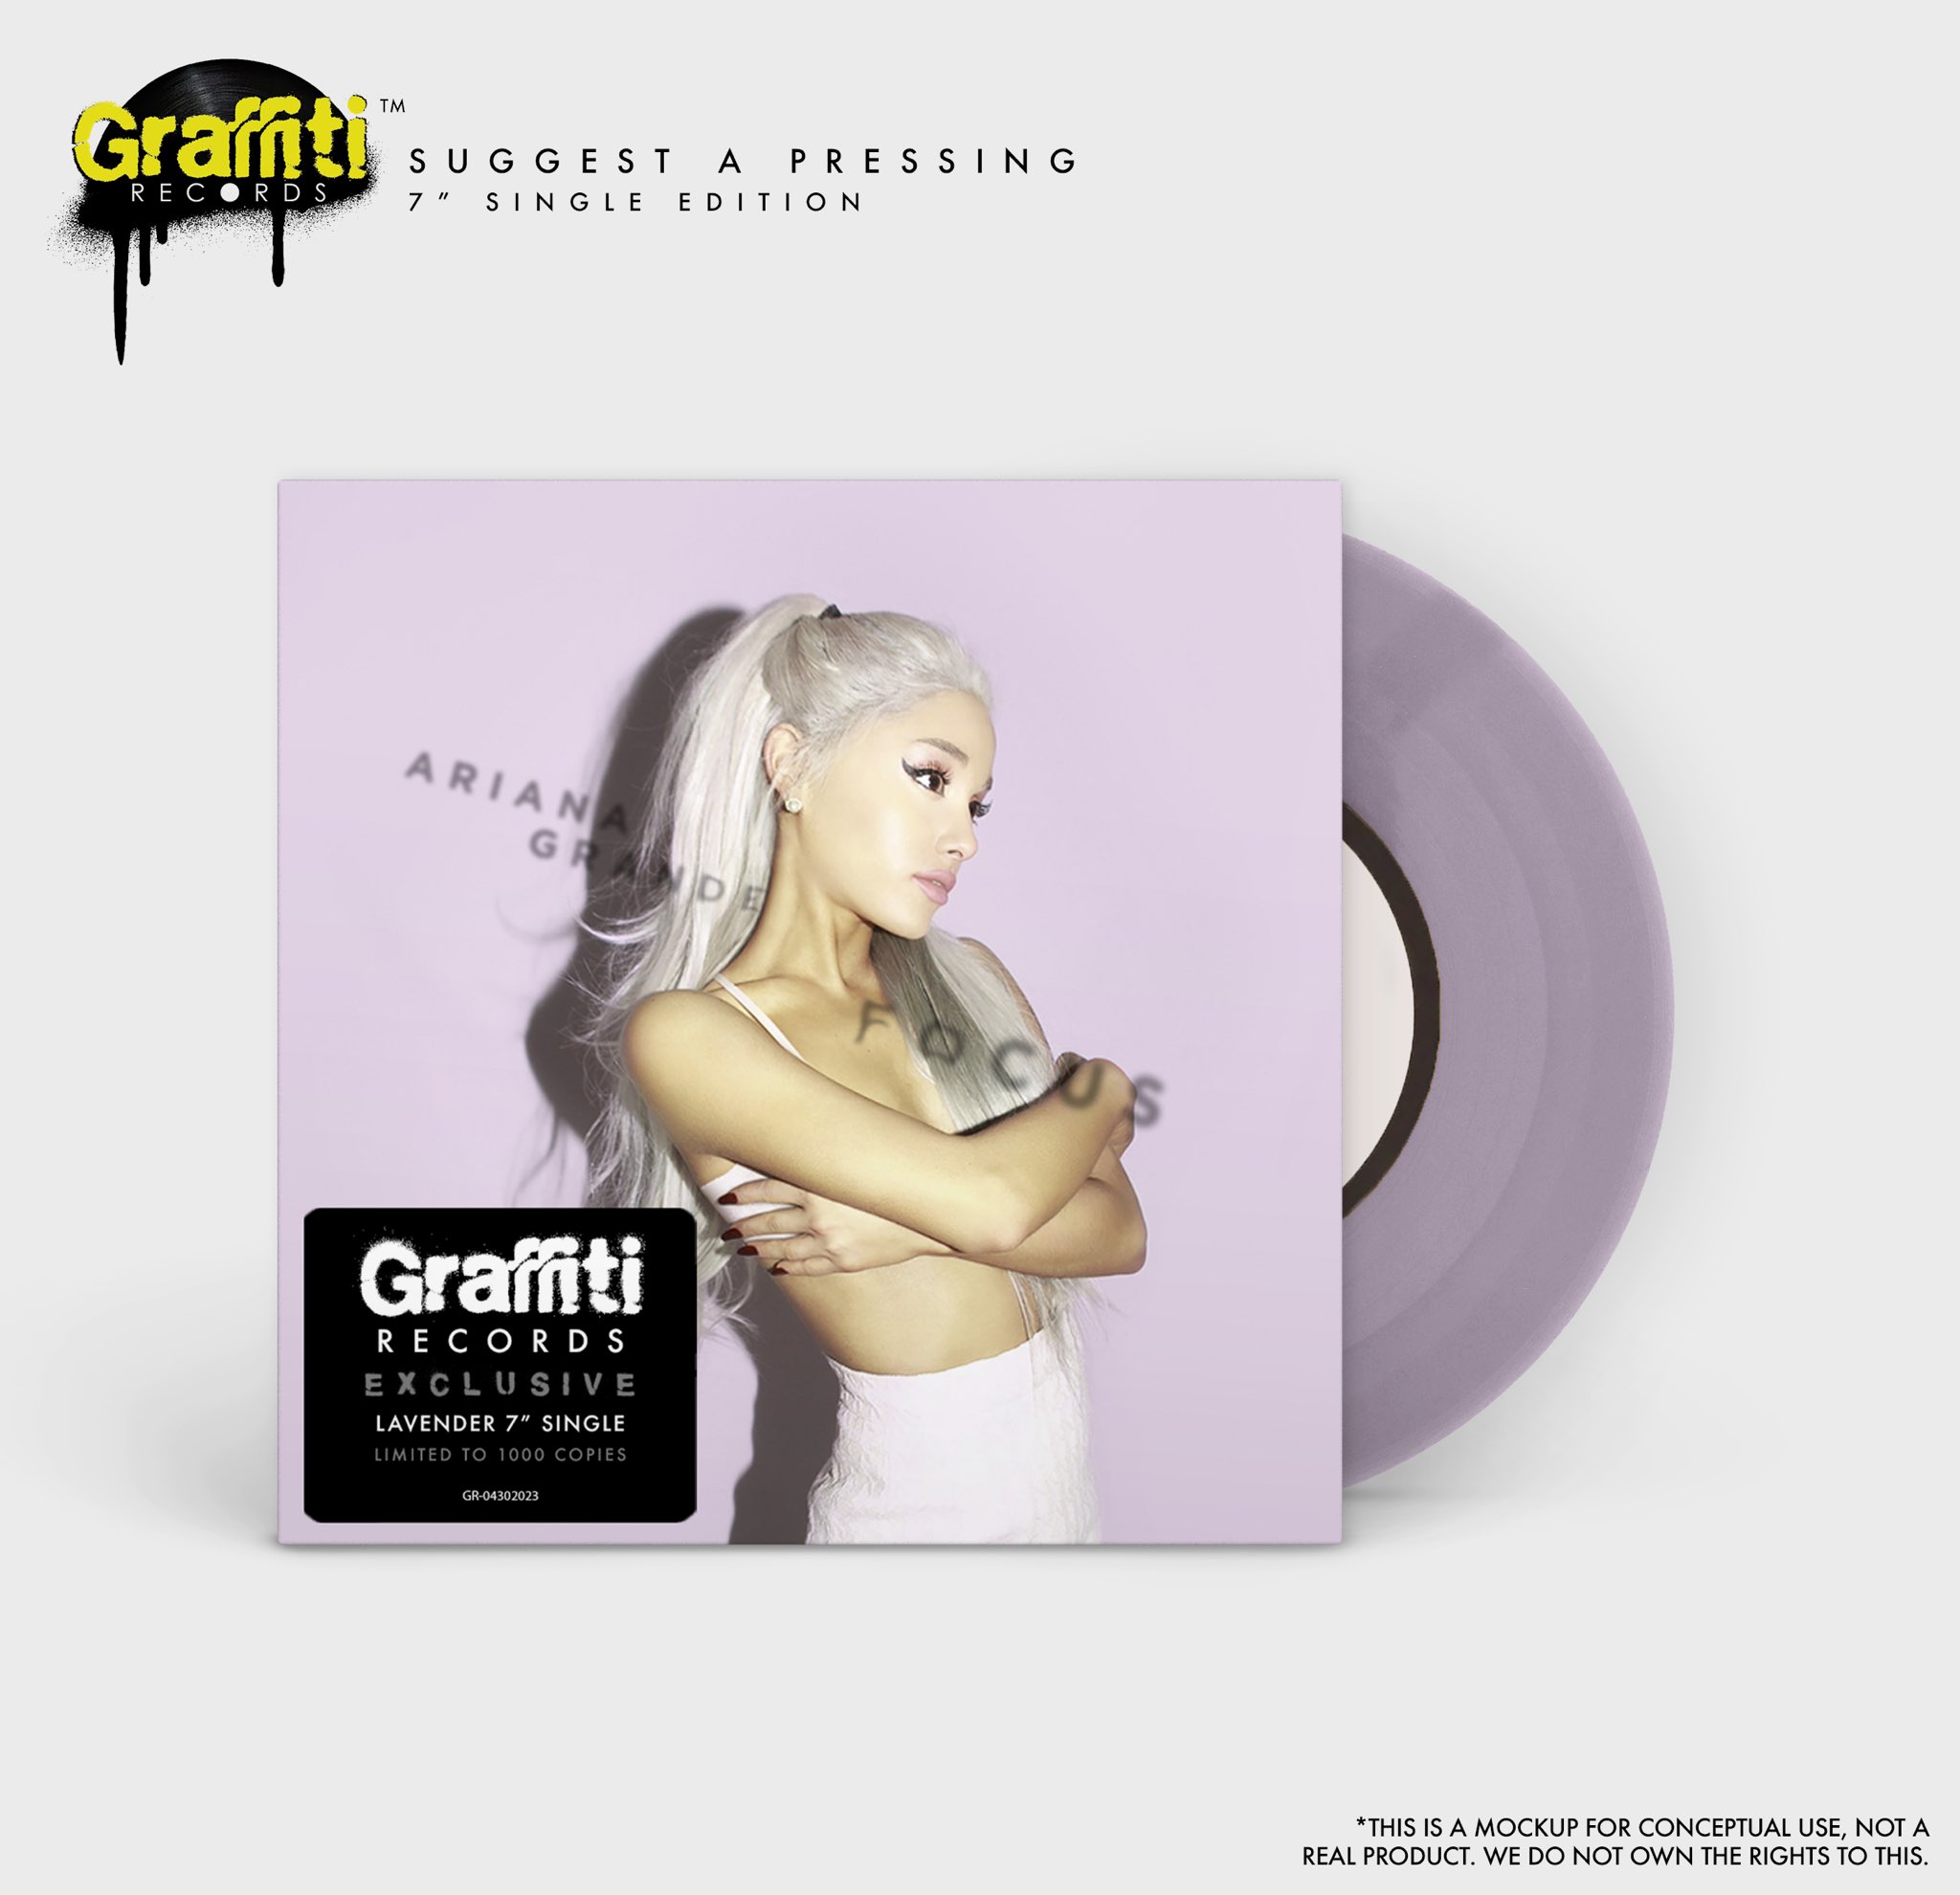 Graffiti Records on X: SUGGEST A PRESSING (7” Edition) : Ariana Grande -  Focus vinyl. #arianagrande #focus #vinyl #SuggestAPressing   / X